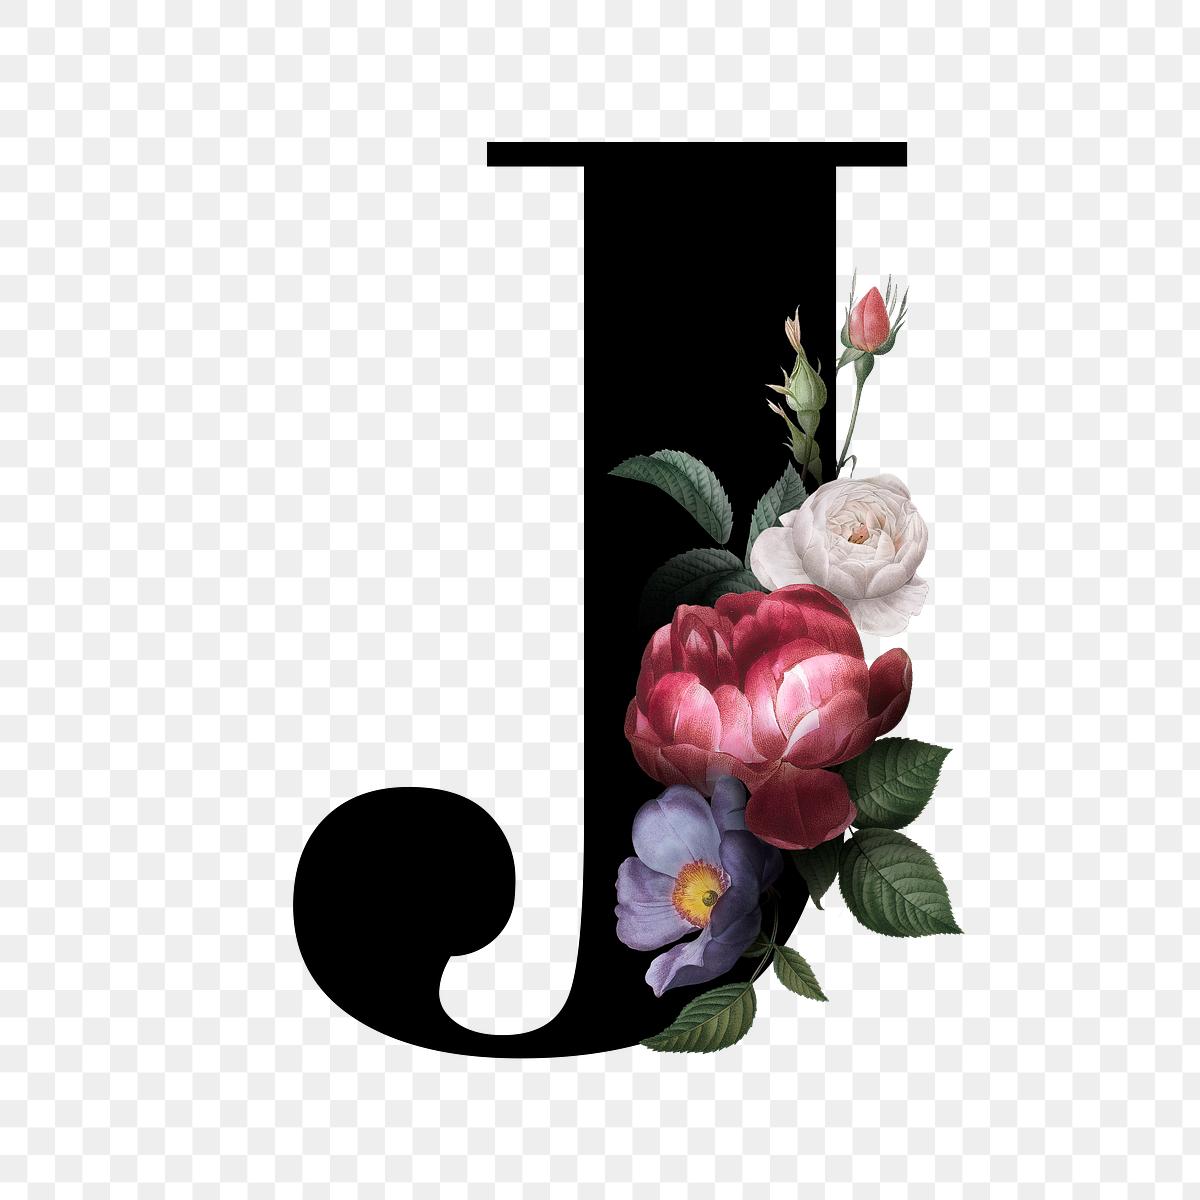 Floral letter J font | Free stock illustration - 583179